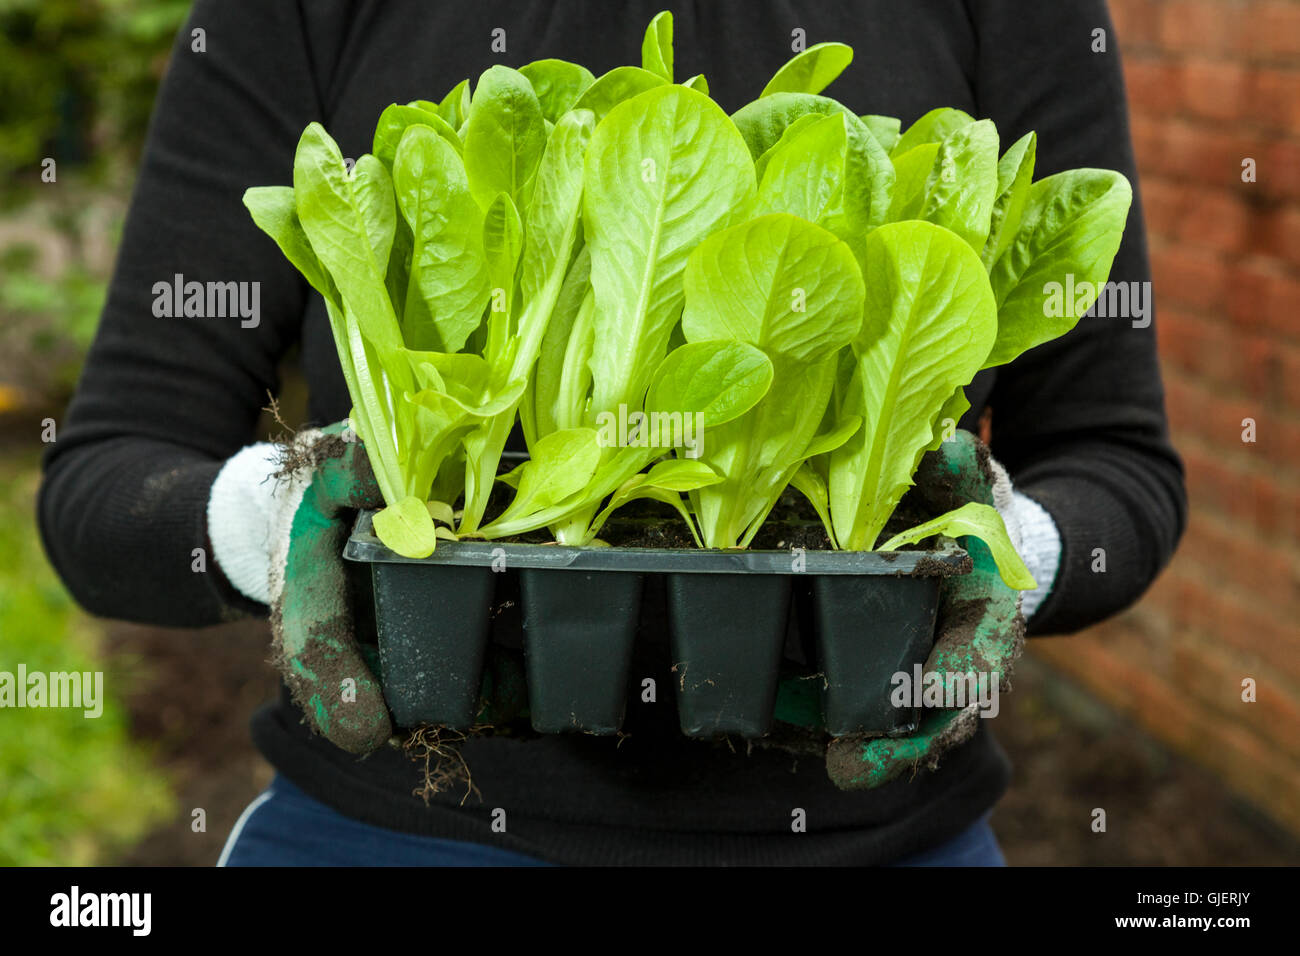 Giovani piante di lattuga in un vassoio pronto per piantare in un giardino o un riparto. Inghilterra, Regno Unito Foto Stock